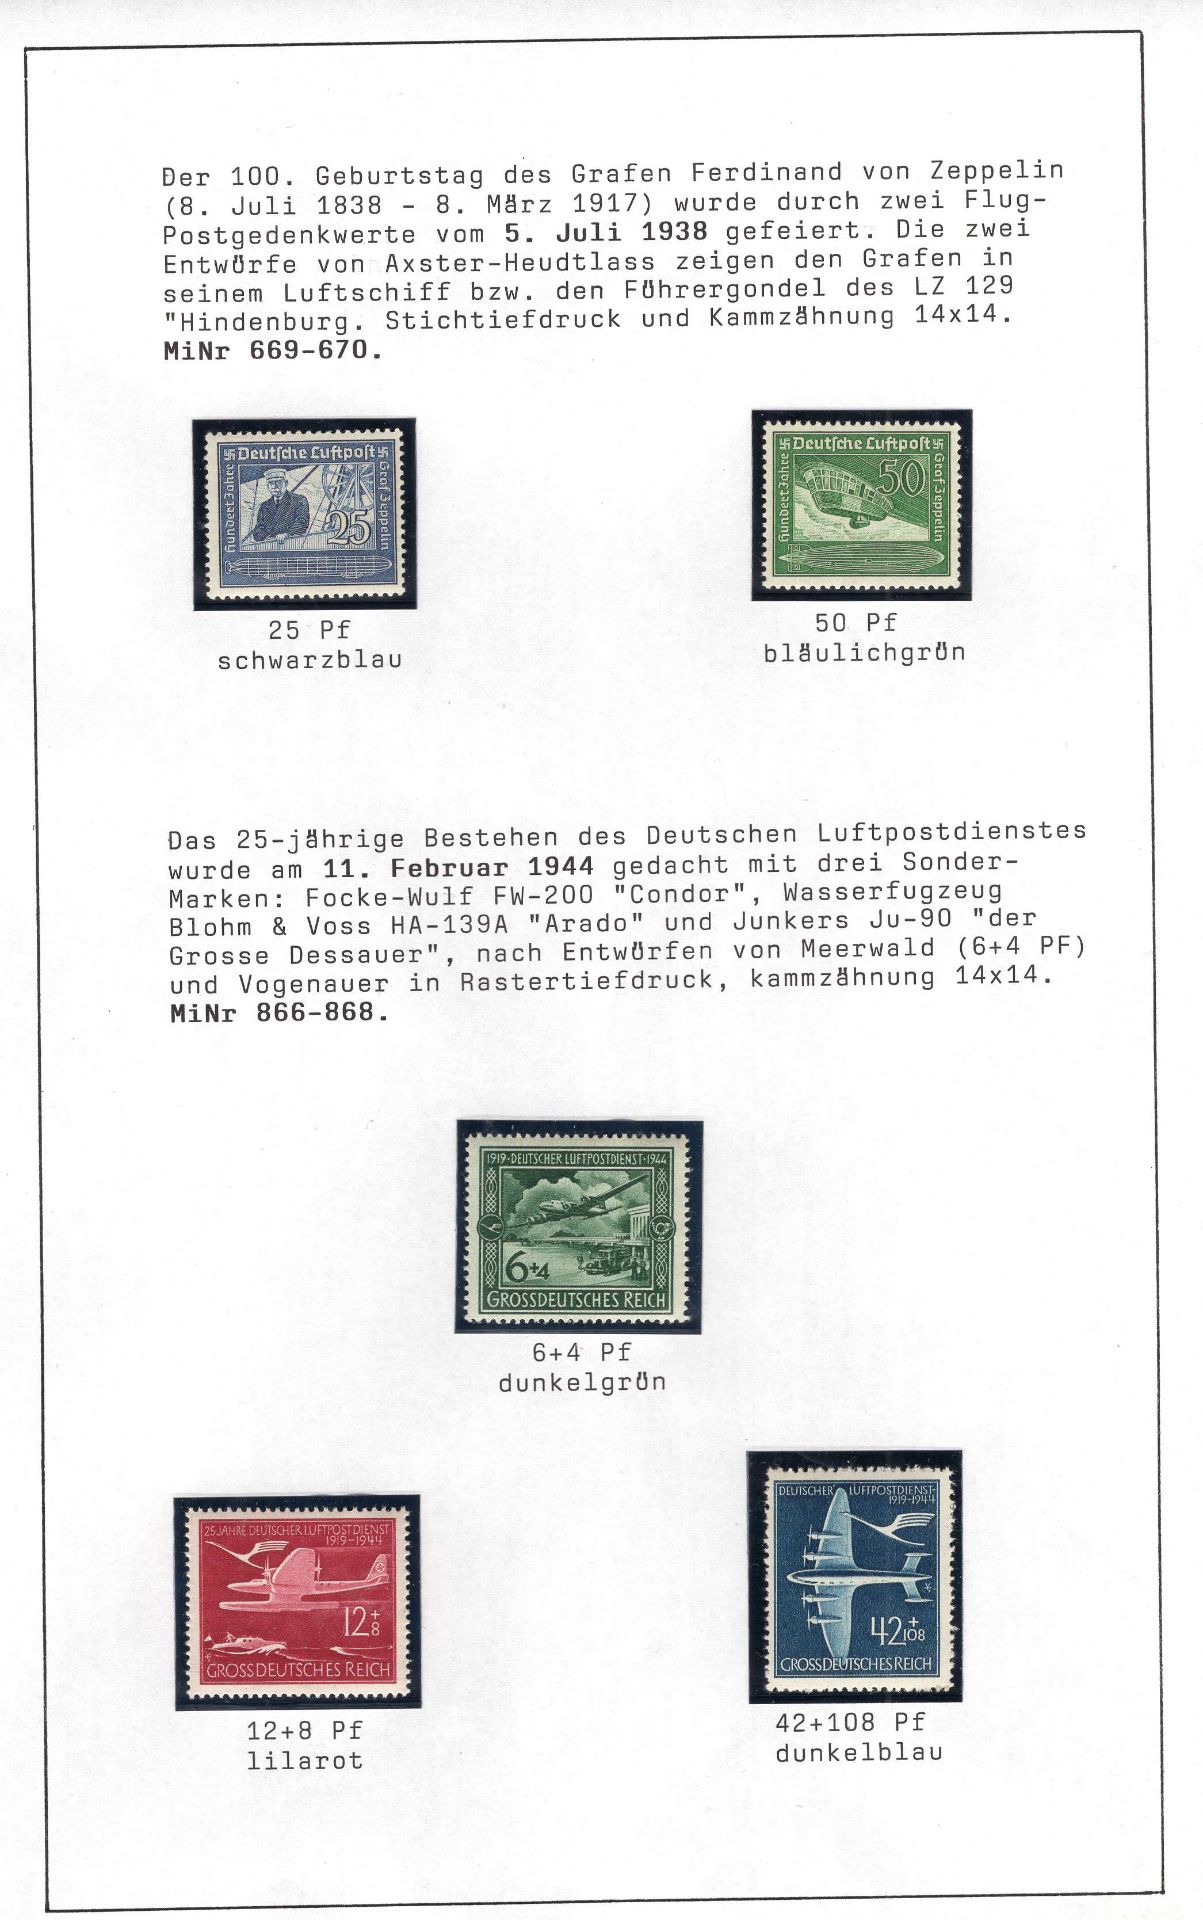 Deutsches Reich 1938/44, Mi. - Nr. 669/70, 866/68, Zeppelin und Luftpostdienst. In tadelloser